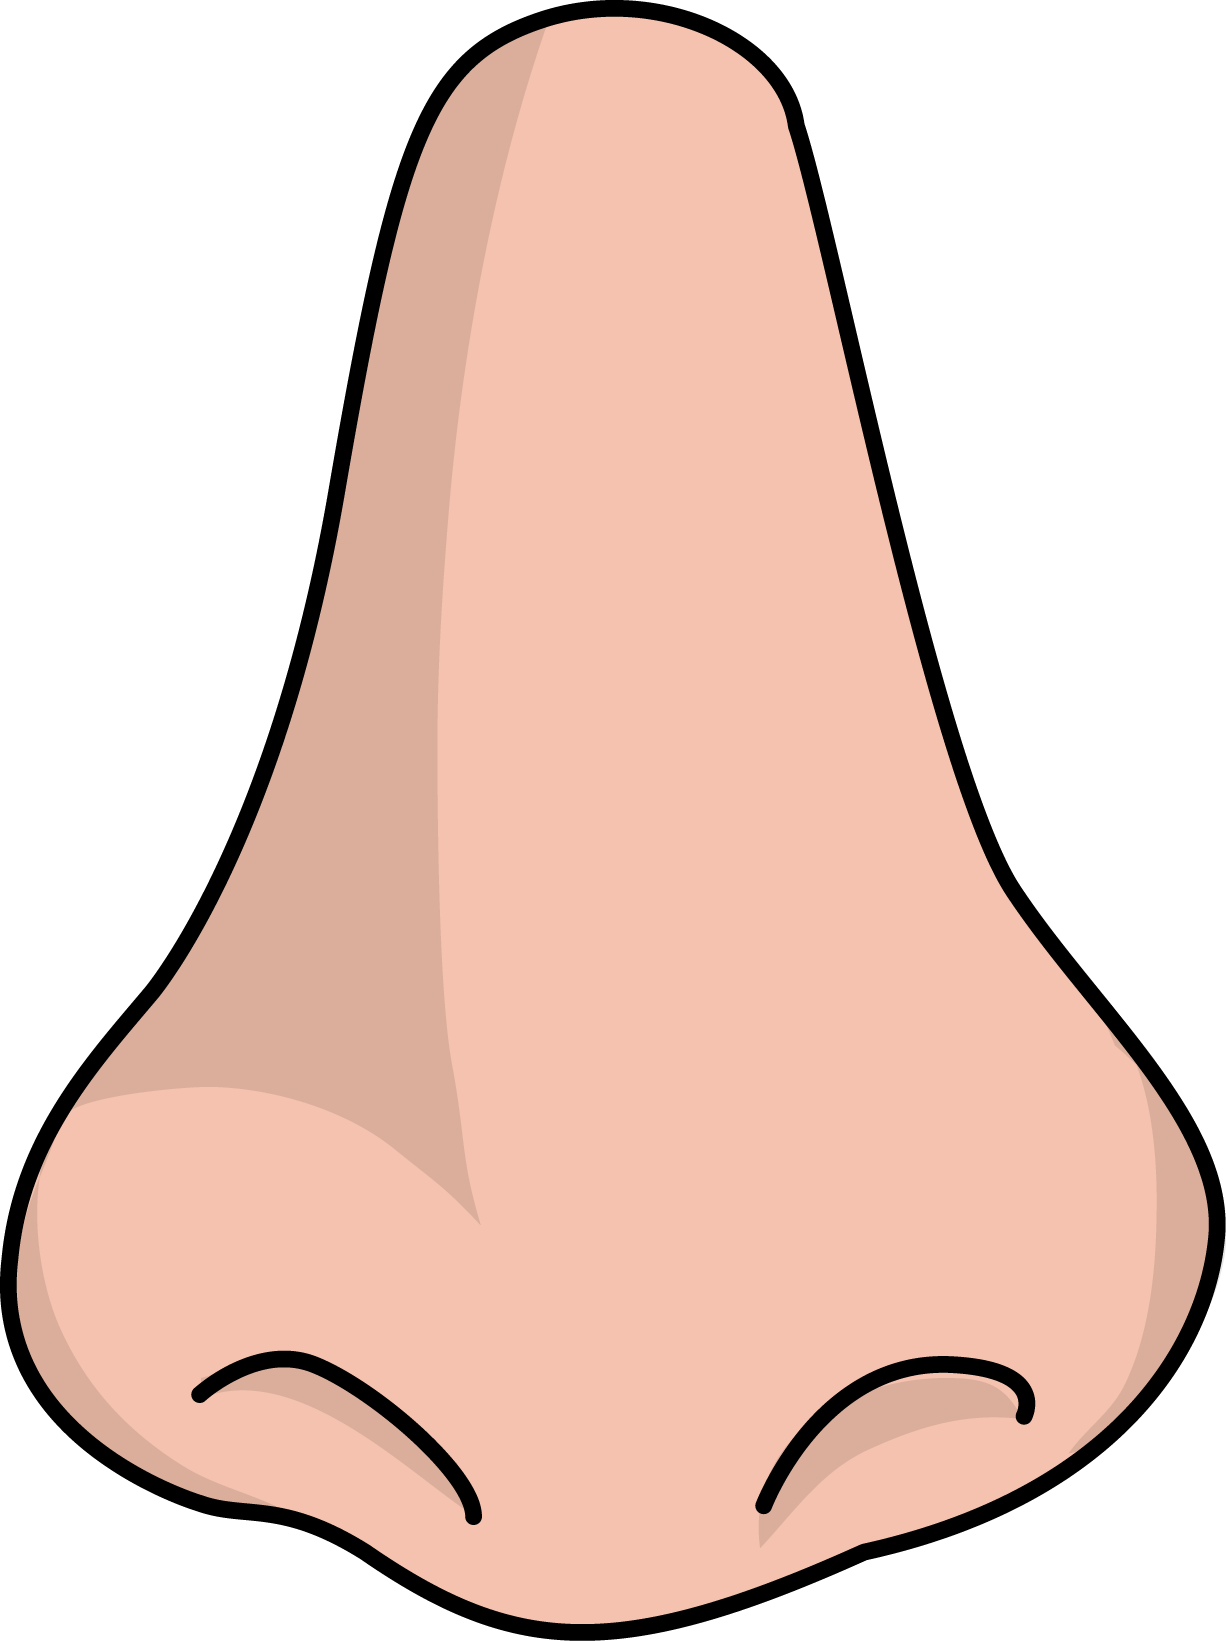 Similar Nose PNG Image